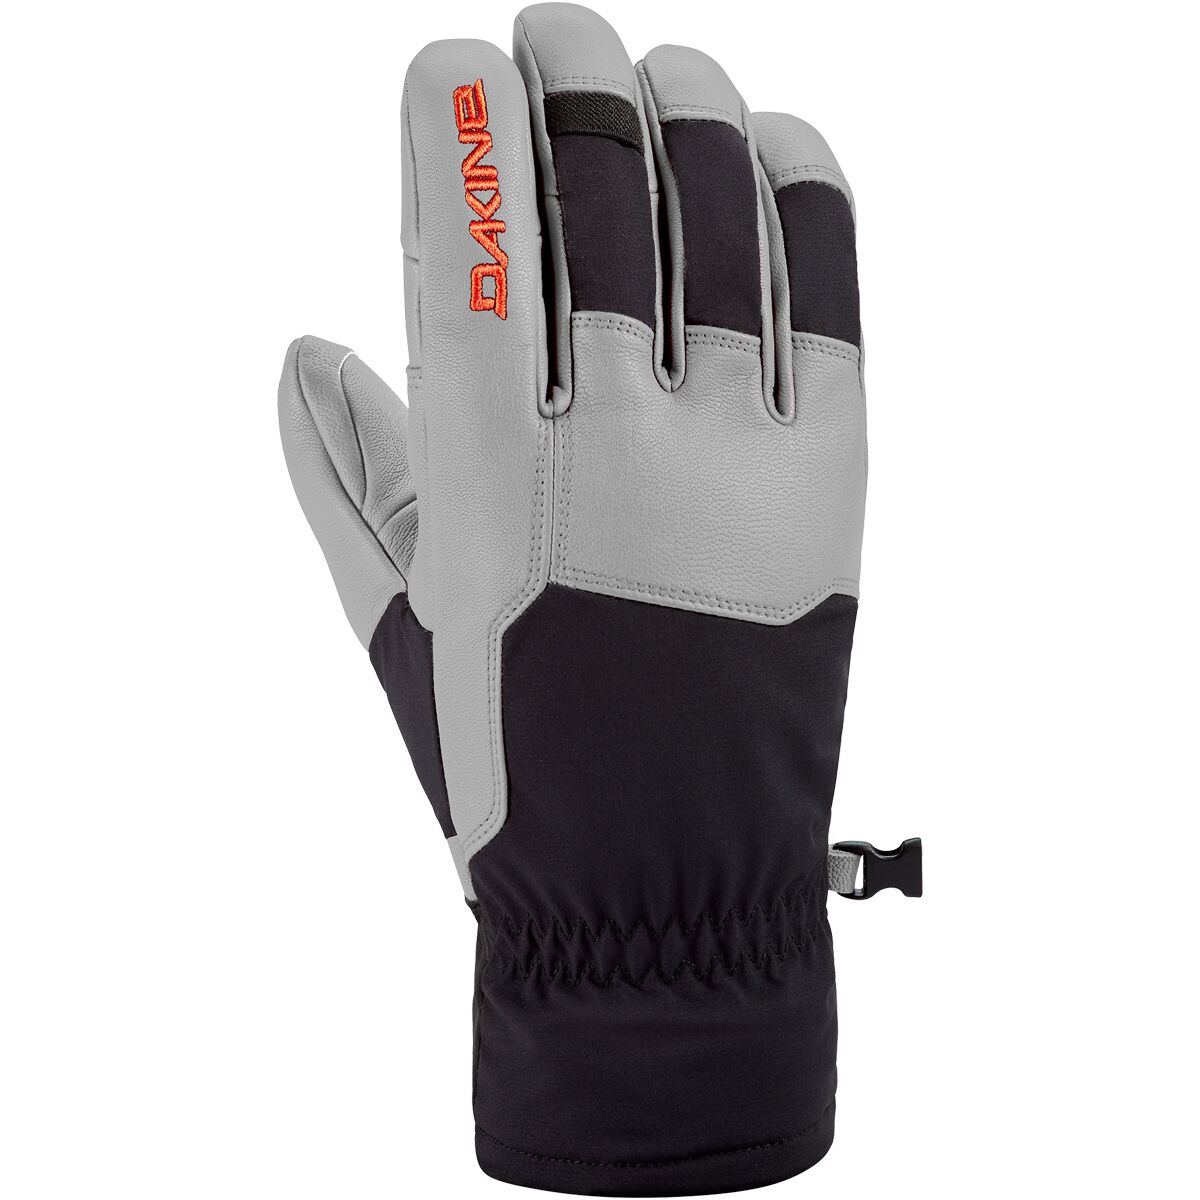 DAKINE Pathfinder Glove - Men's